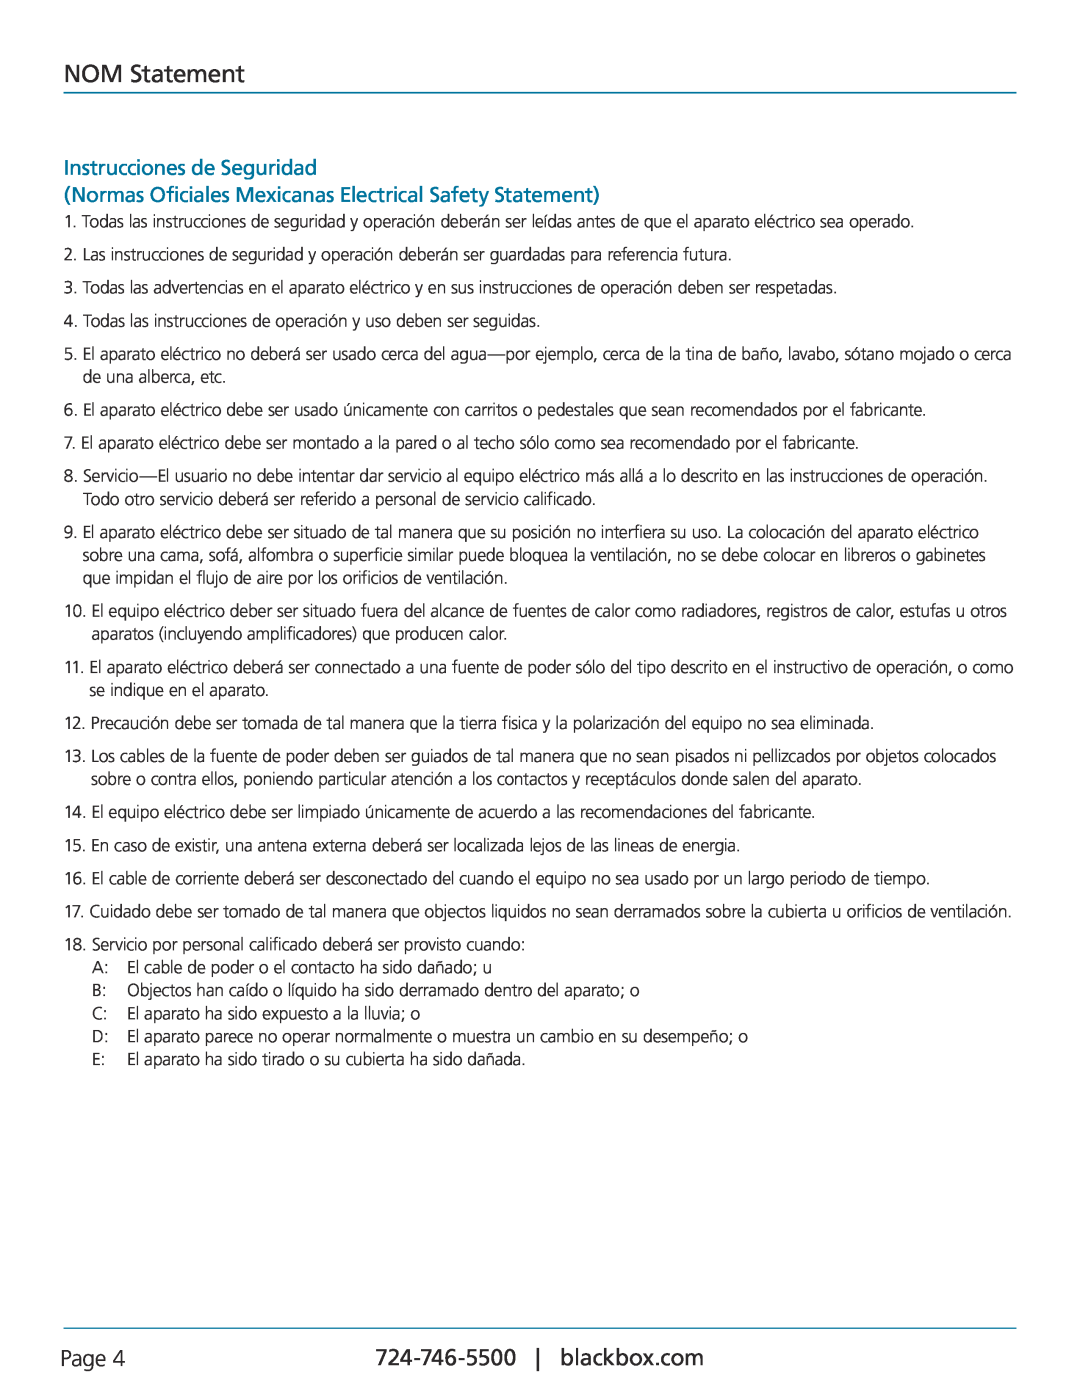 Black Box LES402A NOM Statement, Instrucciones de Seguridad, Normas Oficiales Mexicanas Electrical Safety Statement, Page 